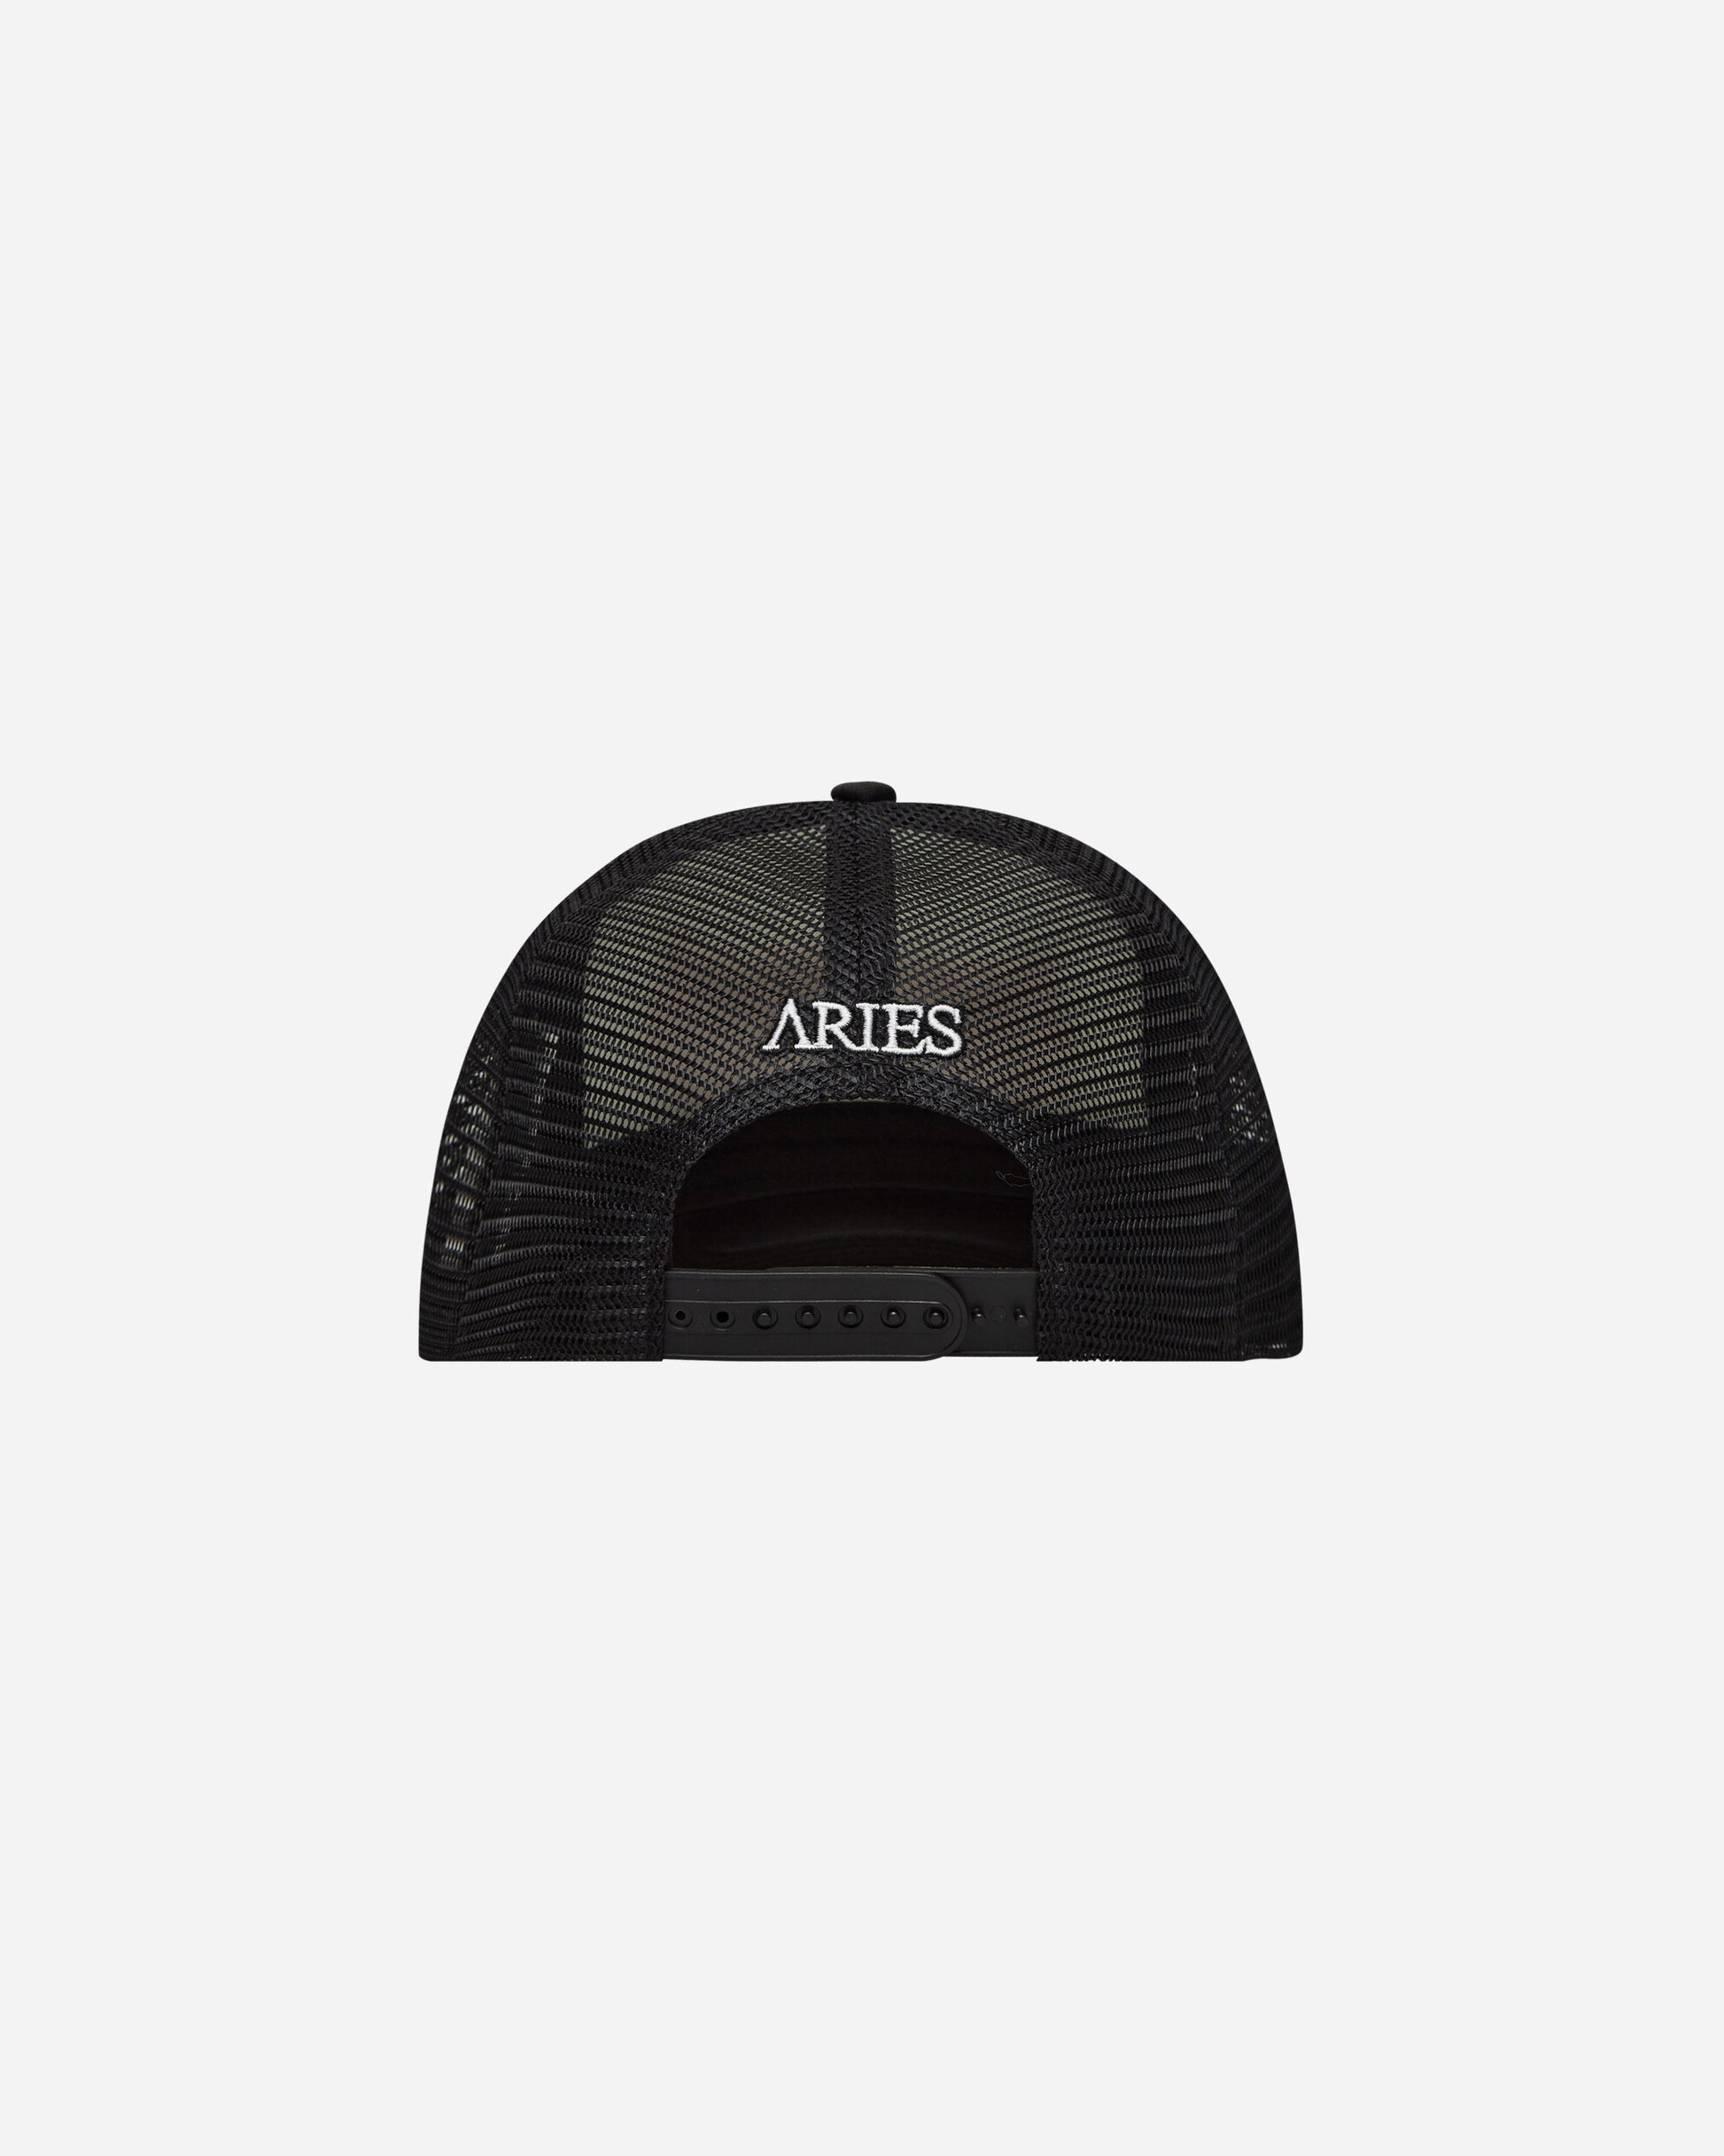 Aries Metal Trucker Cap Black Hats Caps SUAR90011 BLK